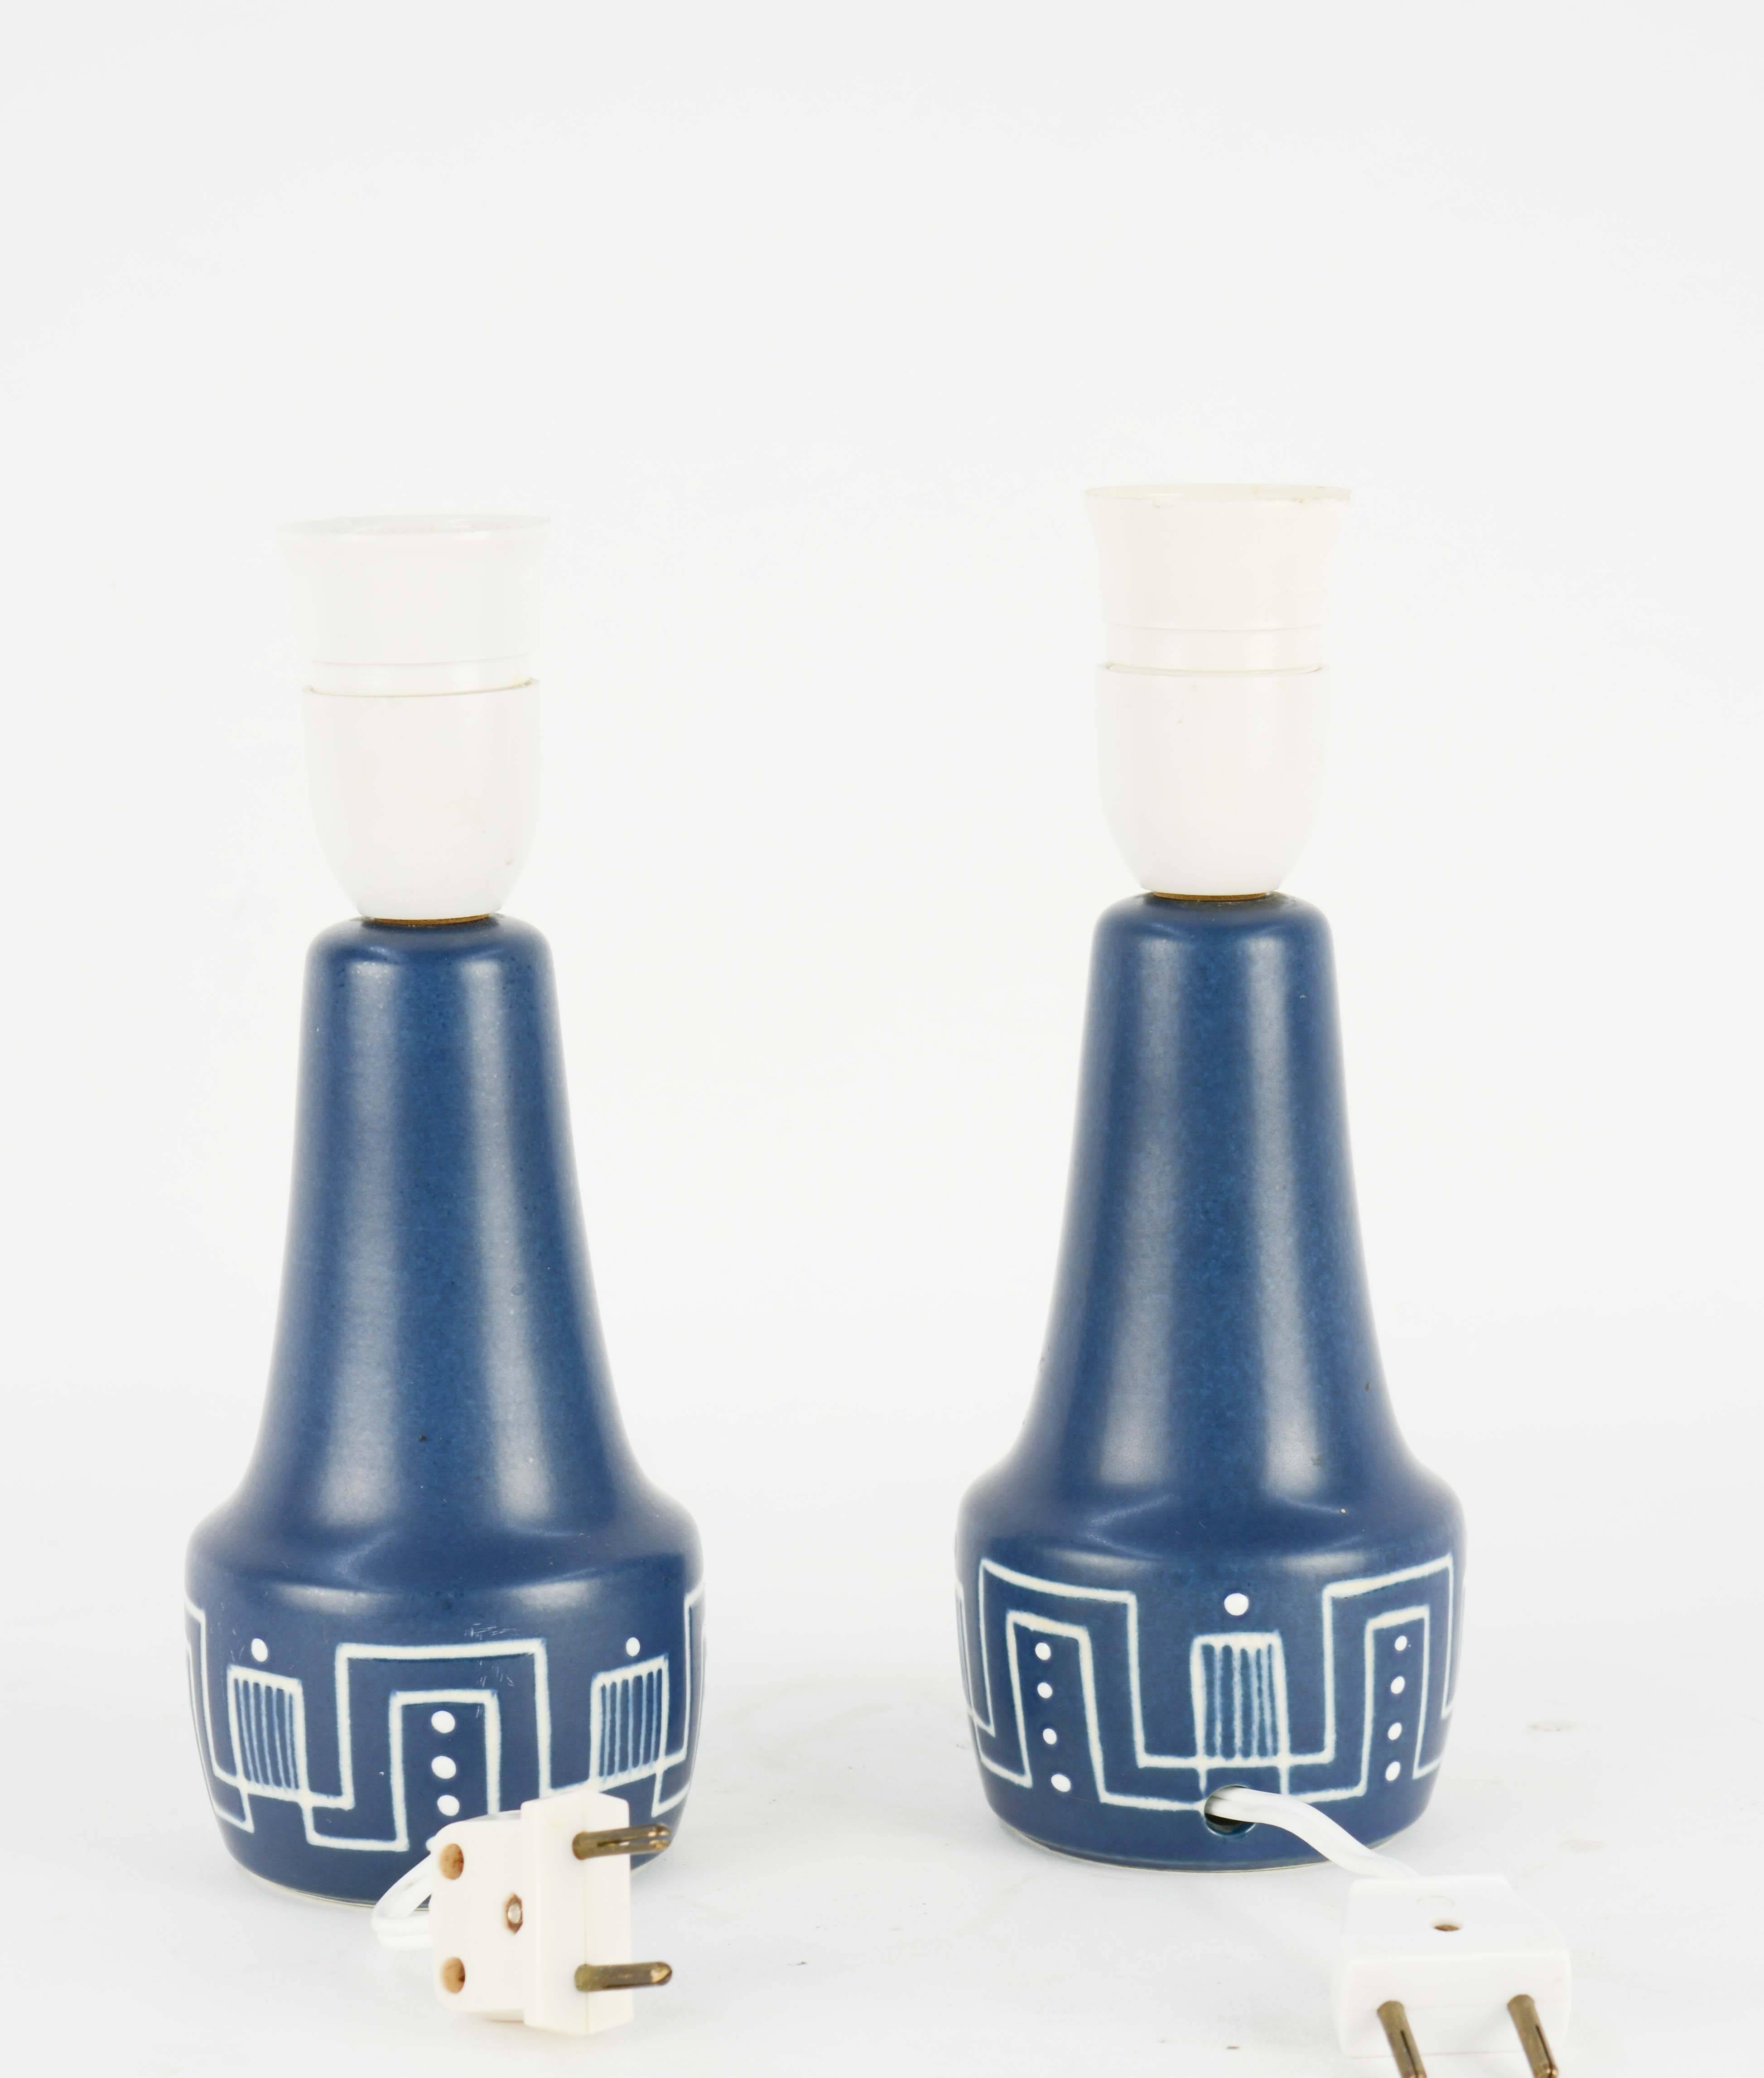 Scandinavian Modern Pair of Rigmor Nielsen's Soholm Stentj of Denmark Ceramic Lamps from 1960s For Sale